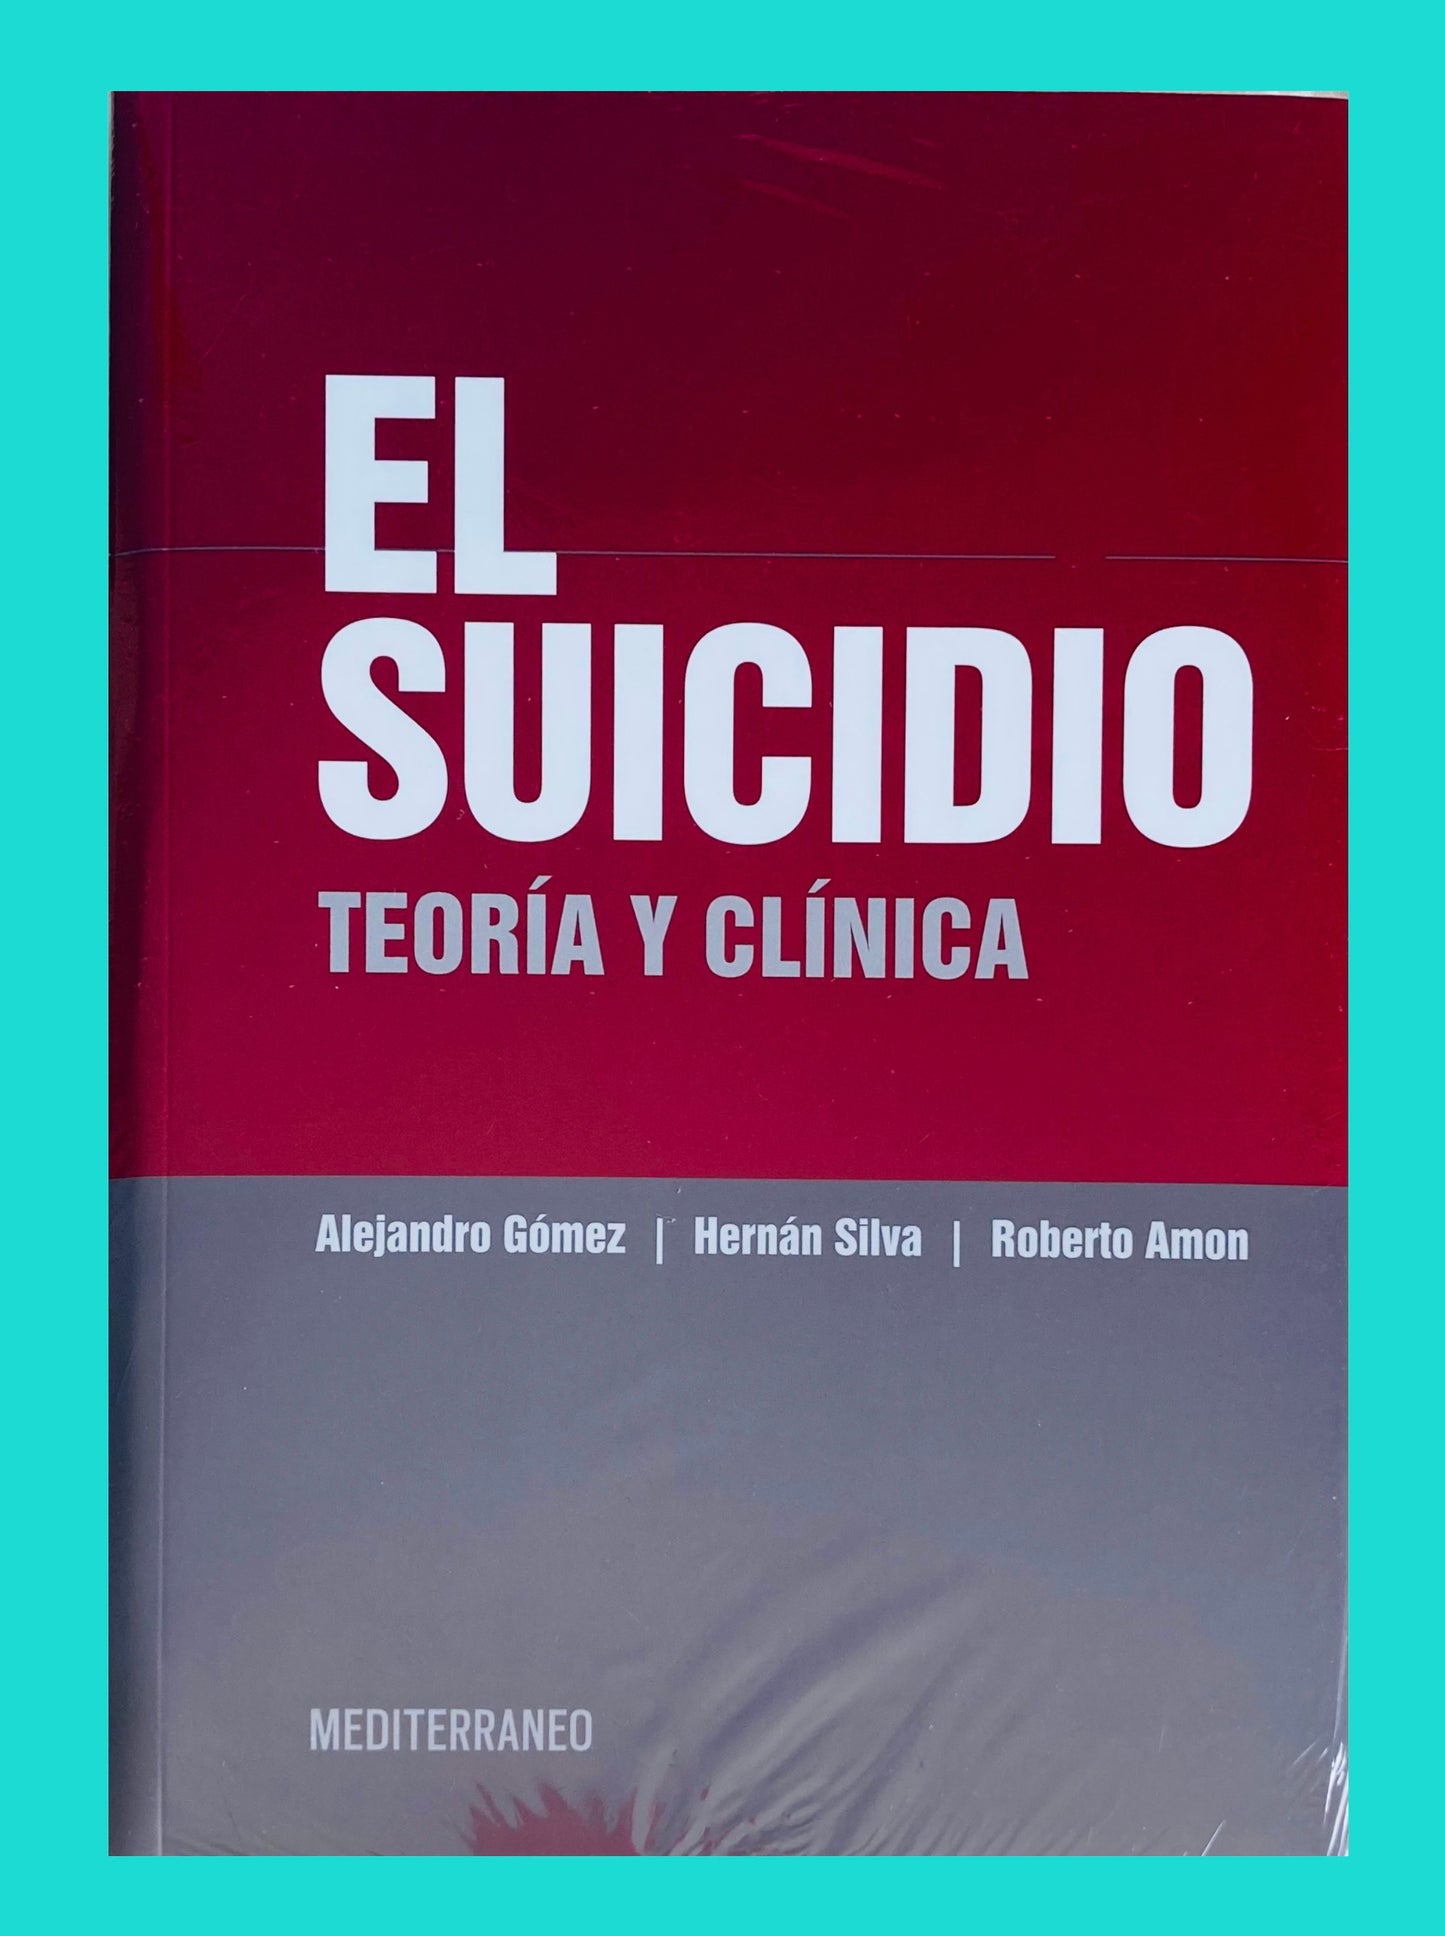 El Suicidio. Teoría y Clínica